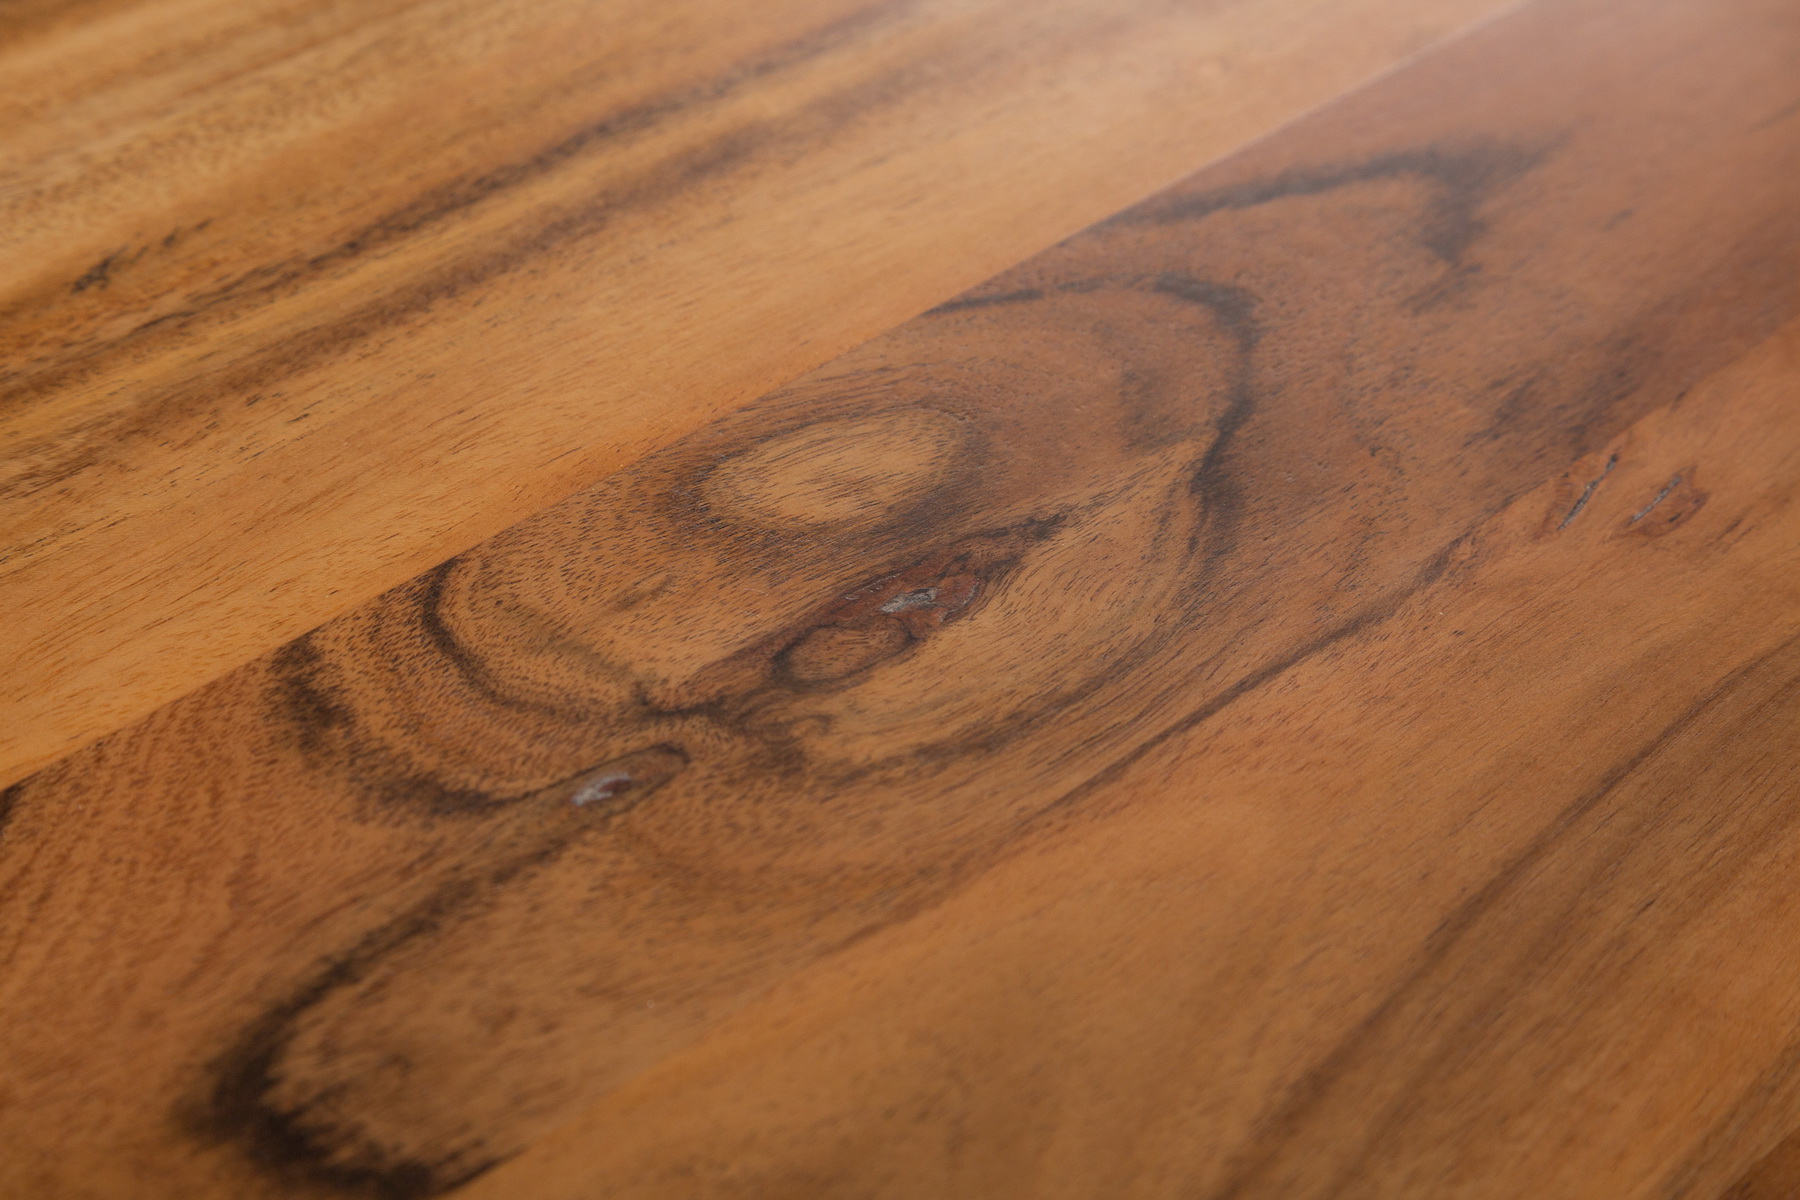 Jedálenský stôl 40048 180x90cm Masív drevo Divoká Acacia